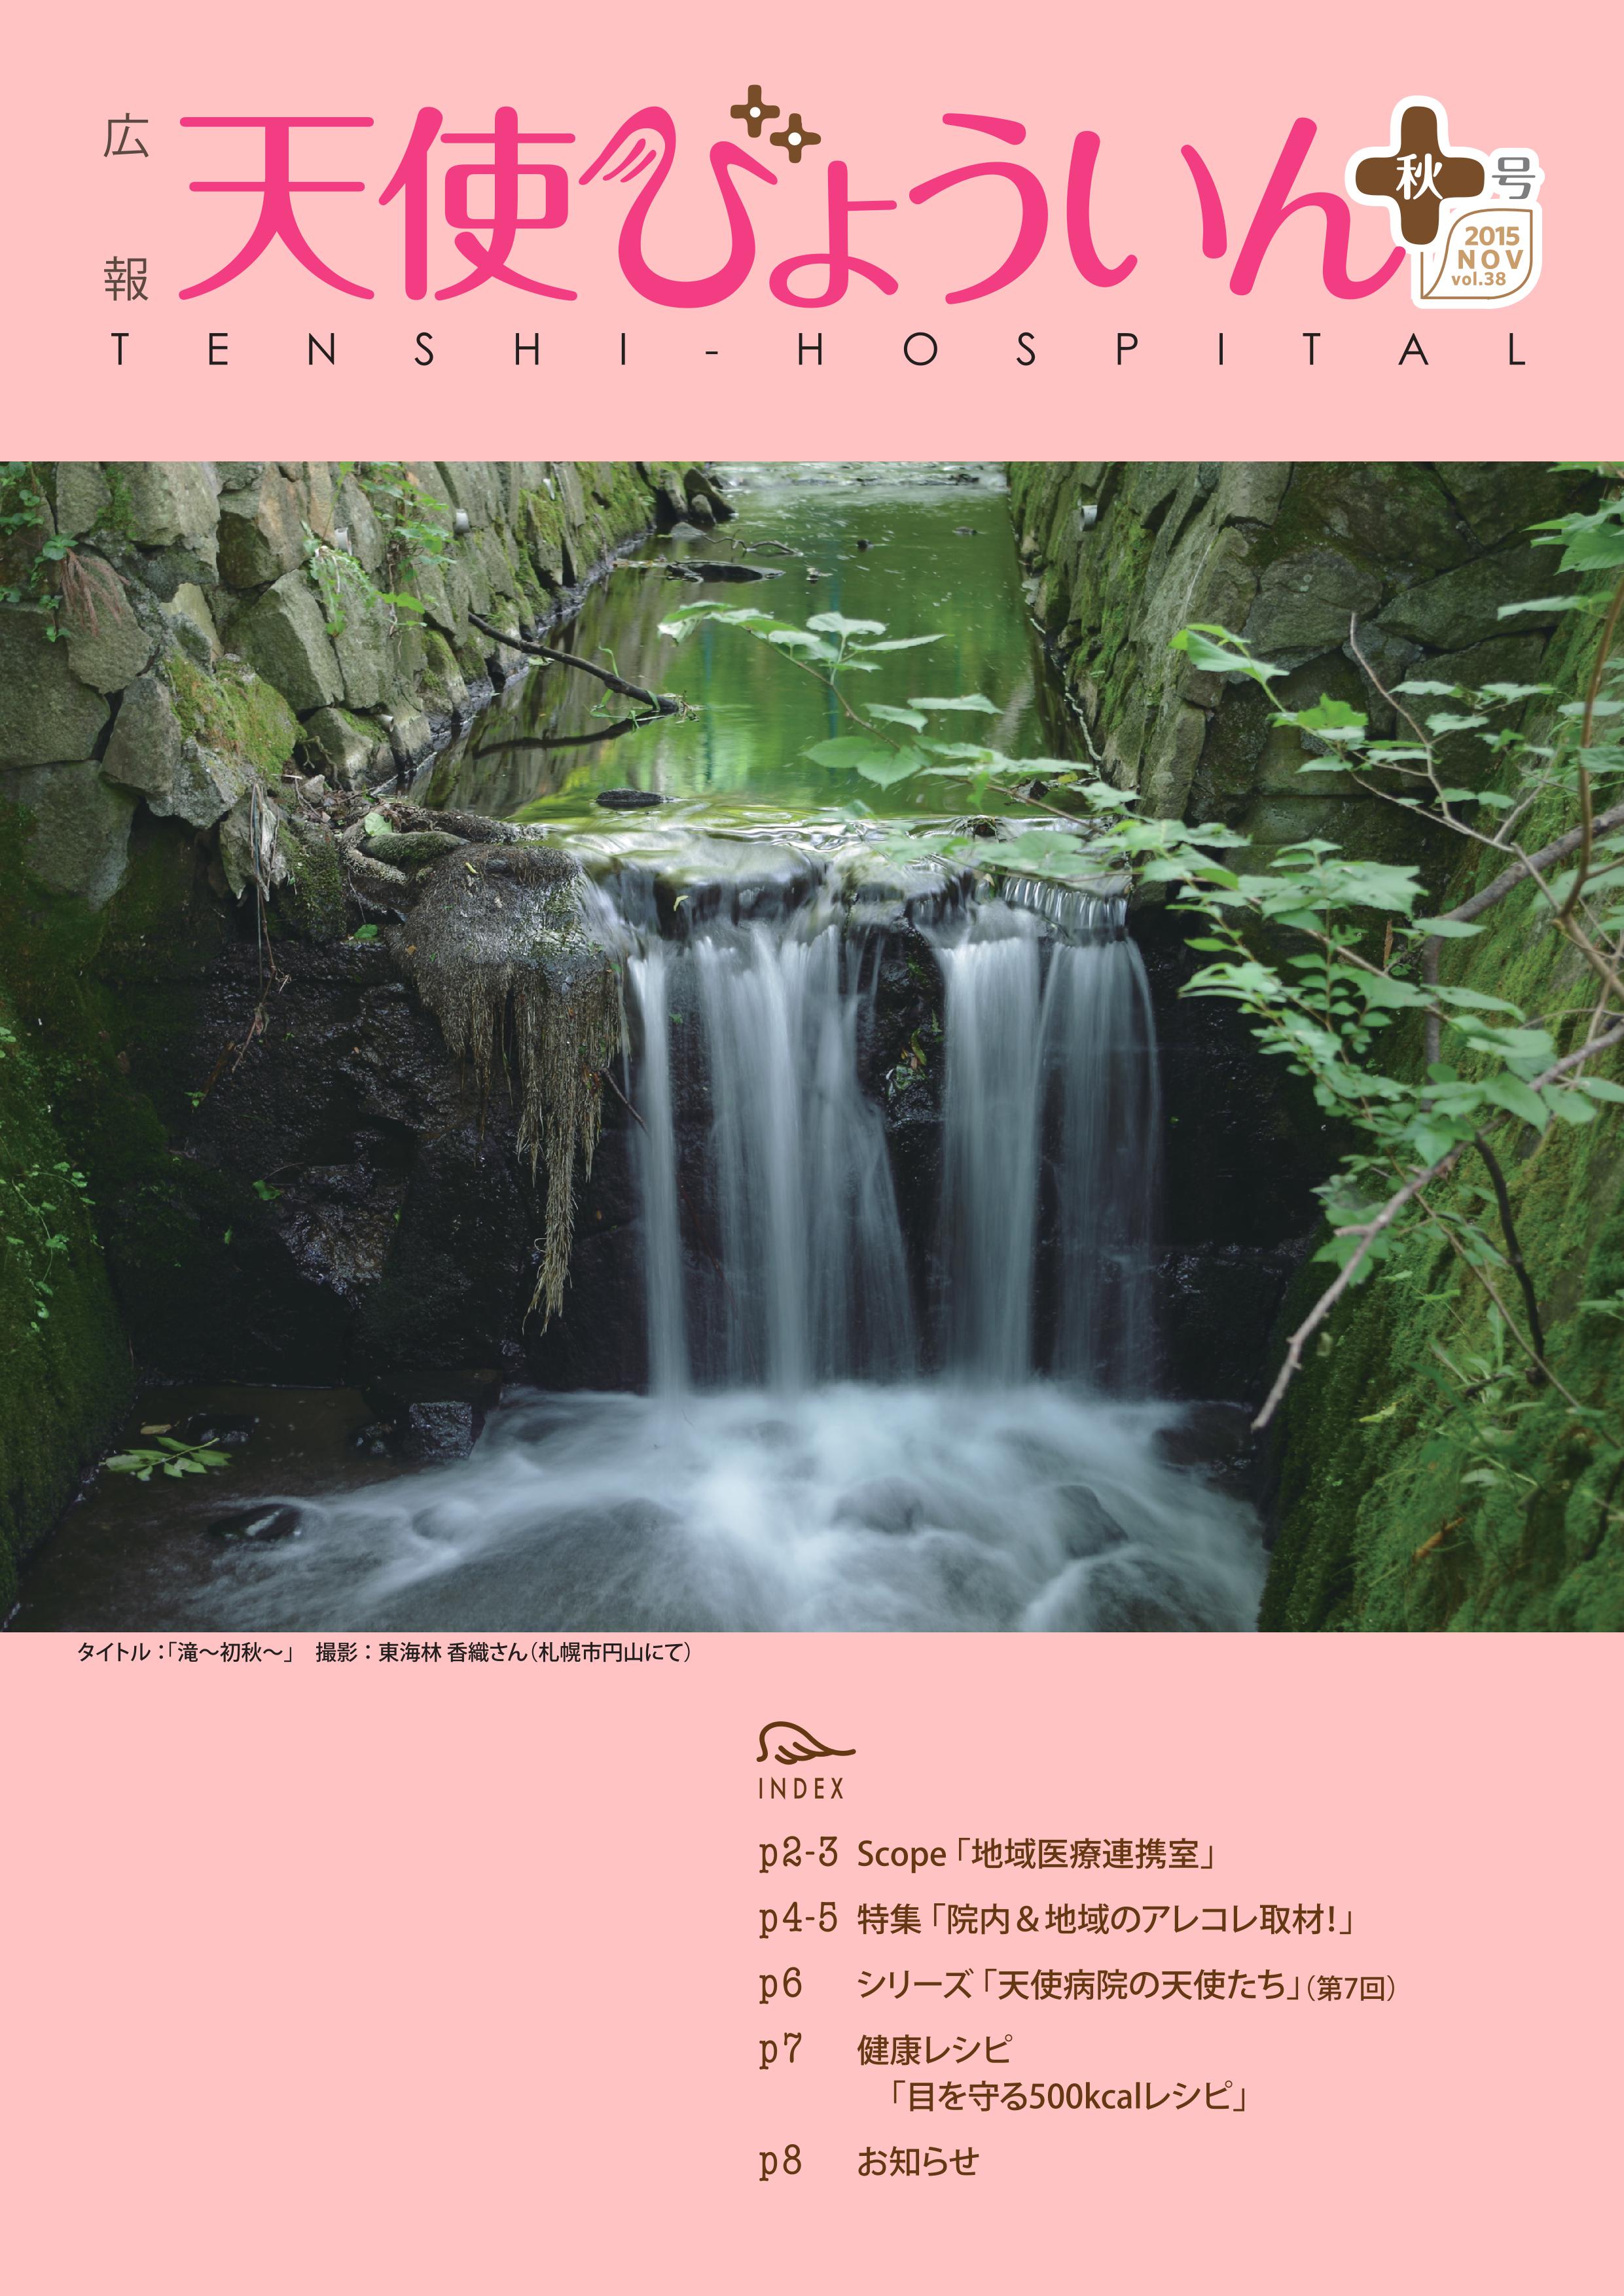 2015広報誌秋号(Vol.38)_表紙.jpg